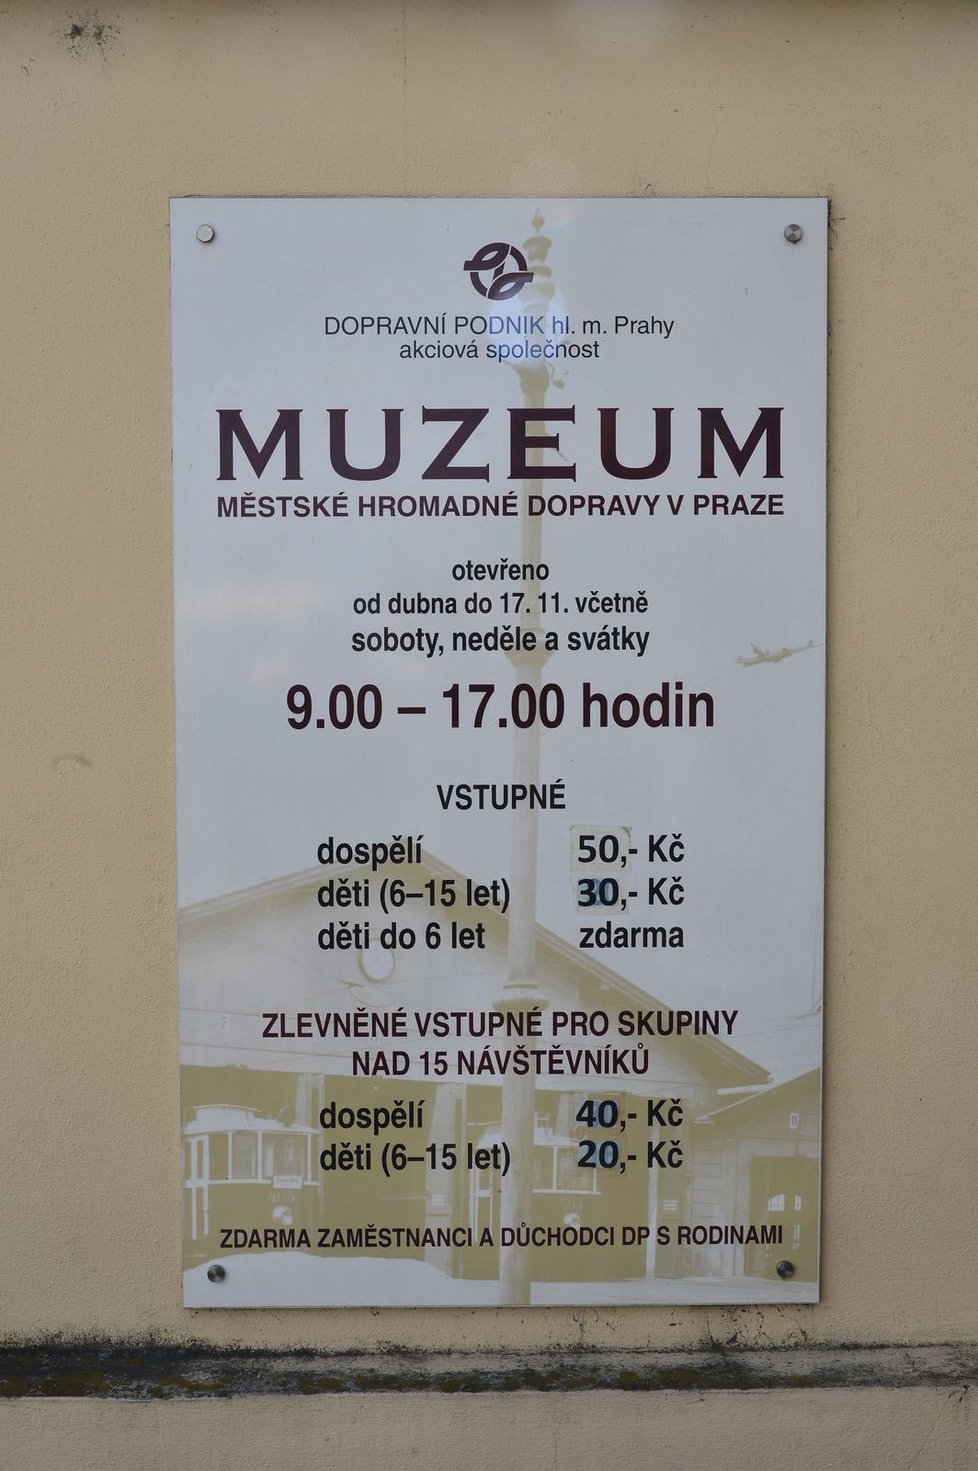 Otevírací doba Muzea MHD.